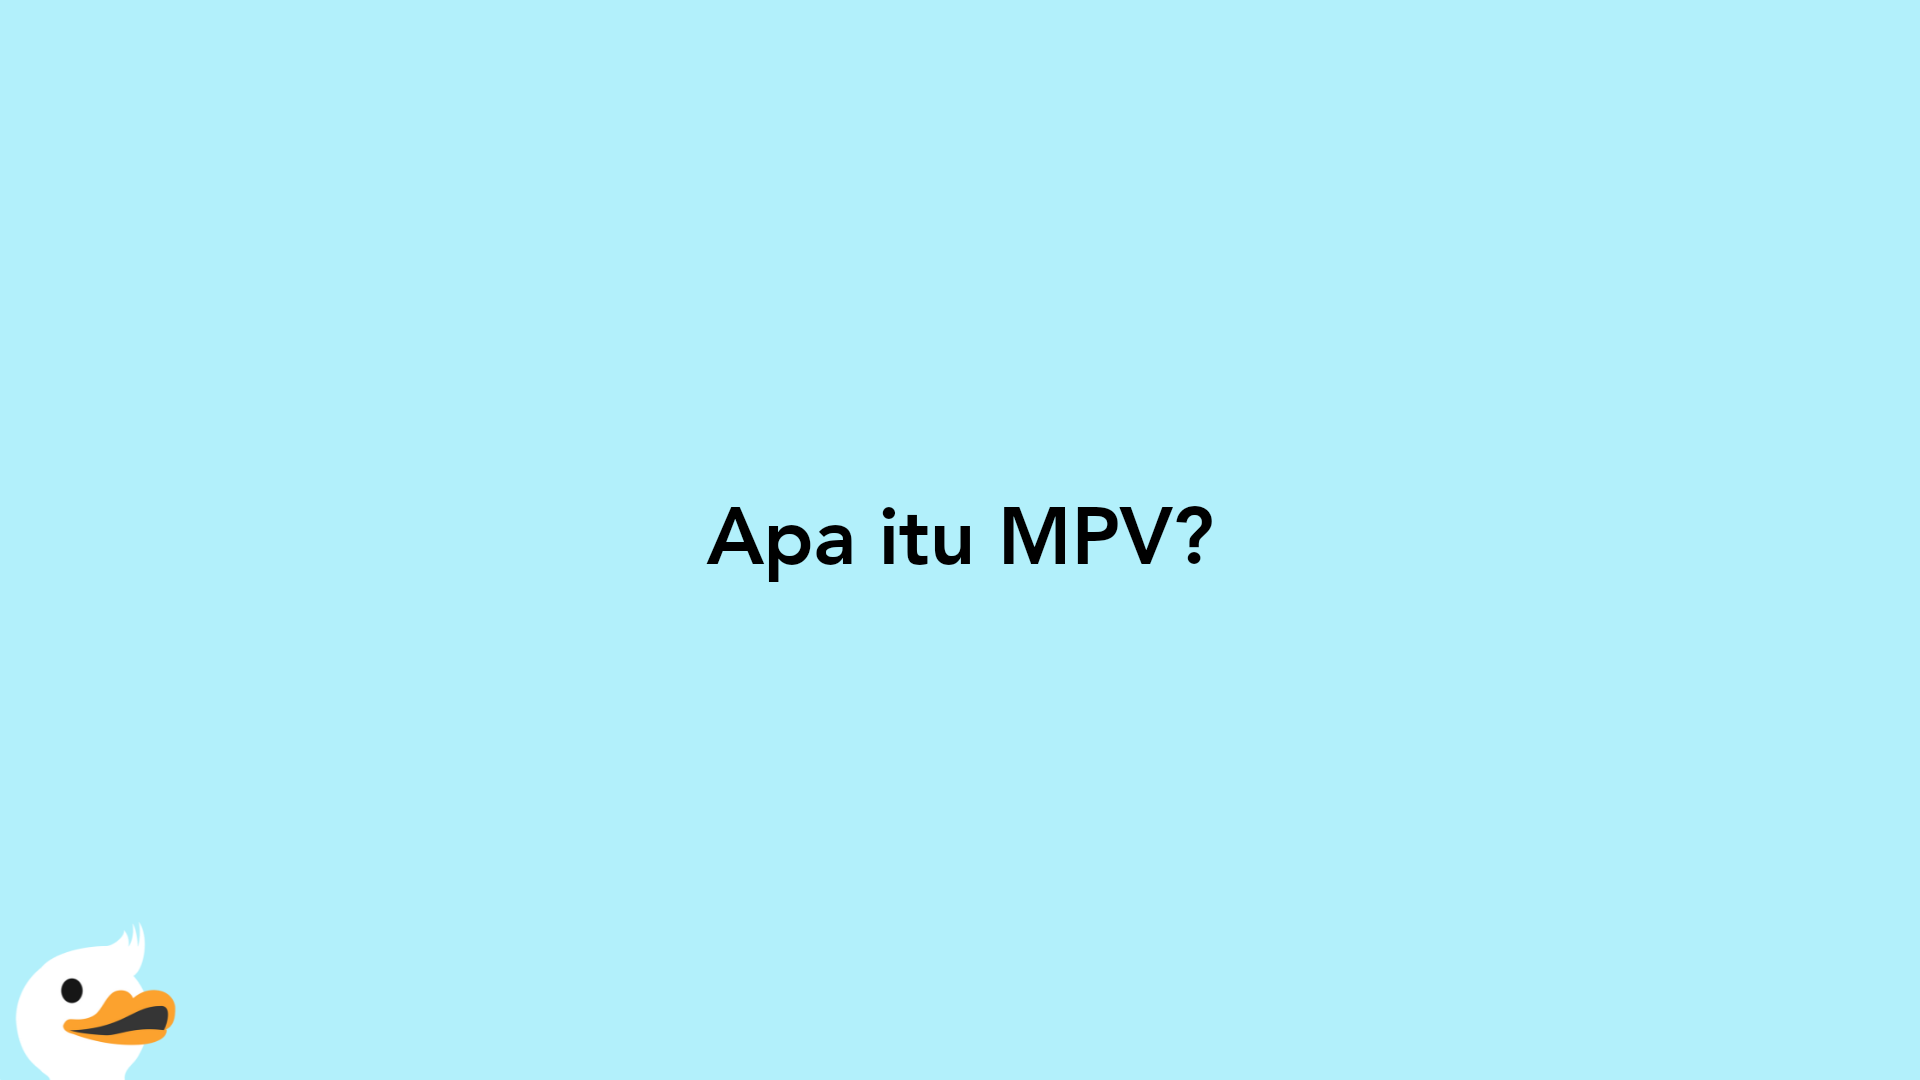 Apa itu MPV?